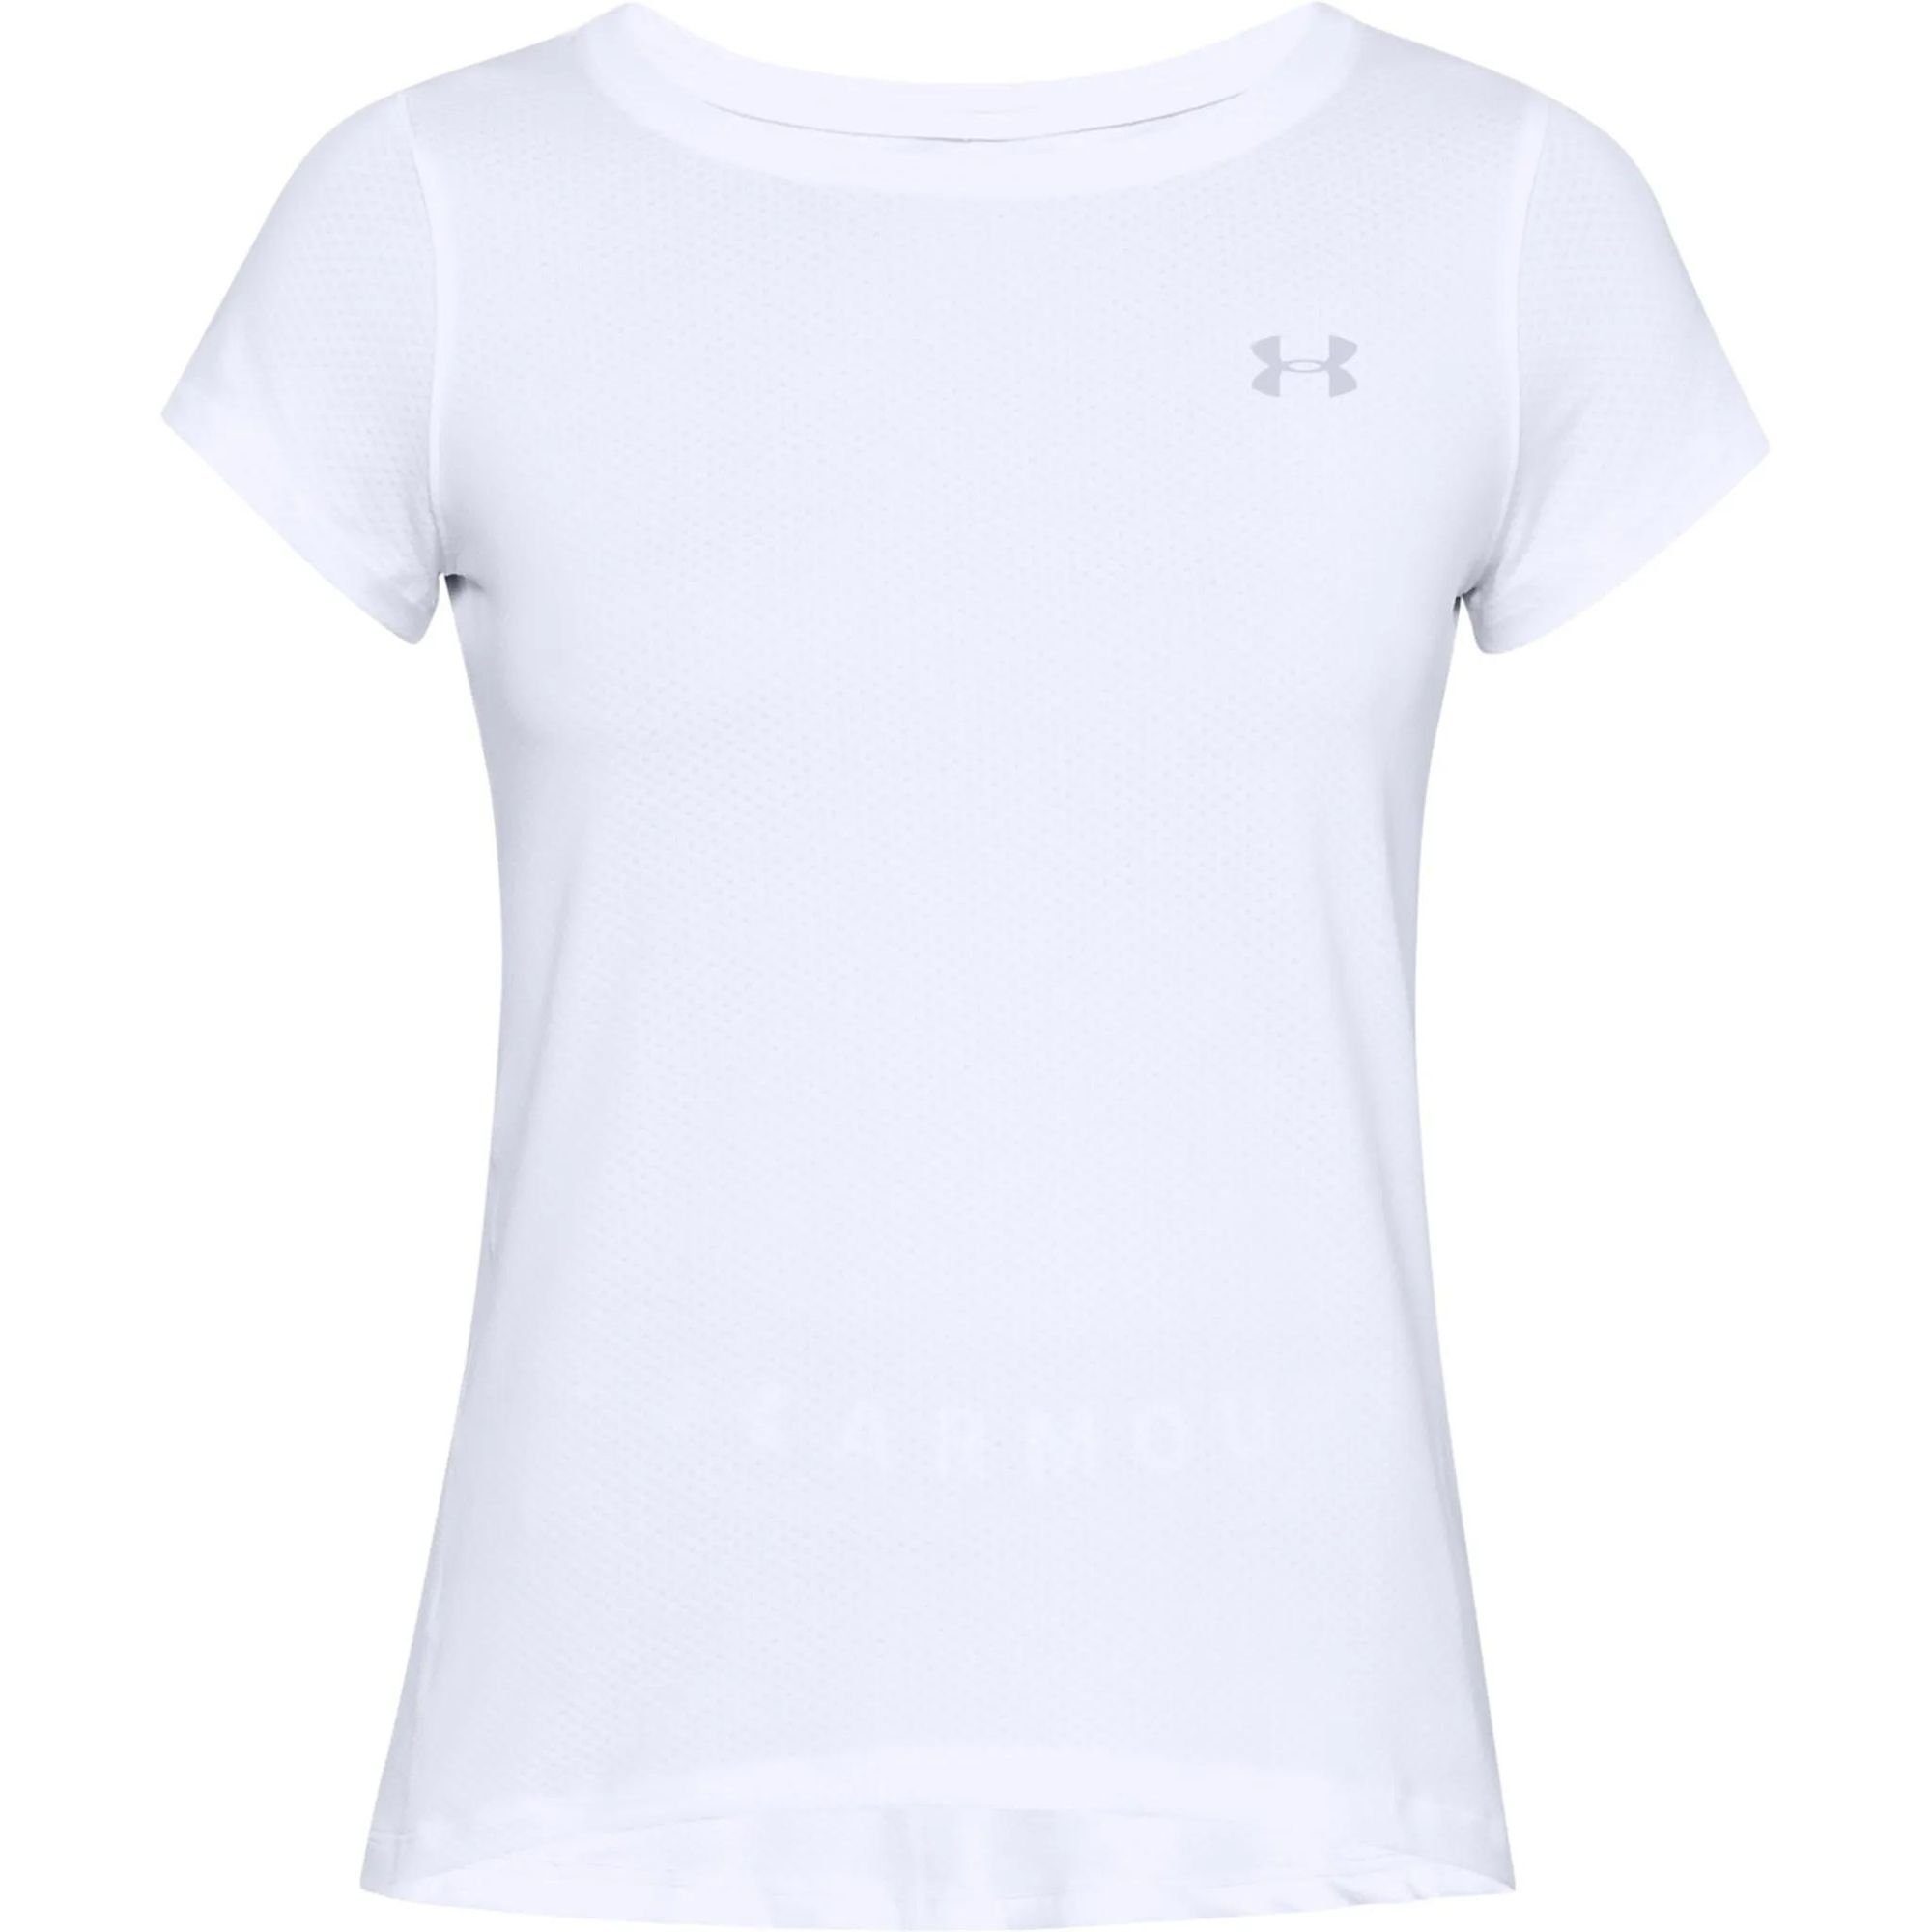 Under Armour® T-Shirt Damen HeatGear Kurzarm T-shirt Weiß - 1328964